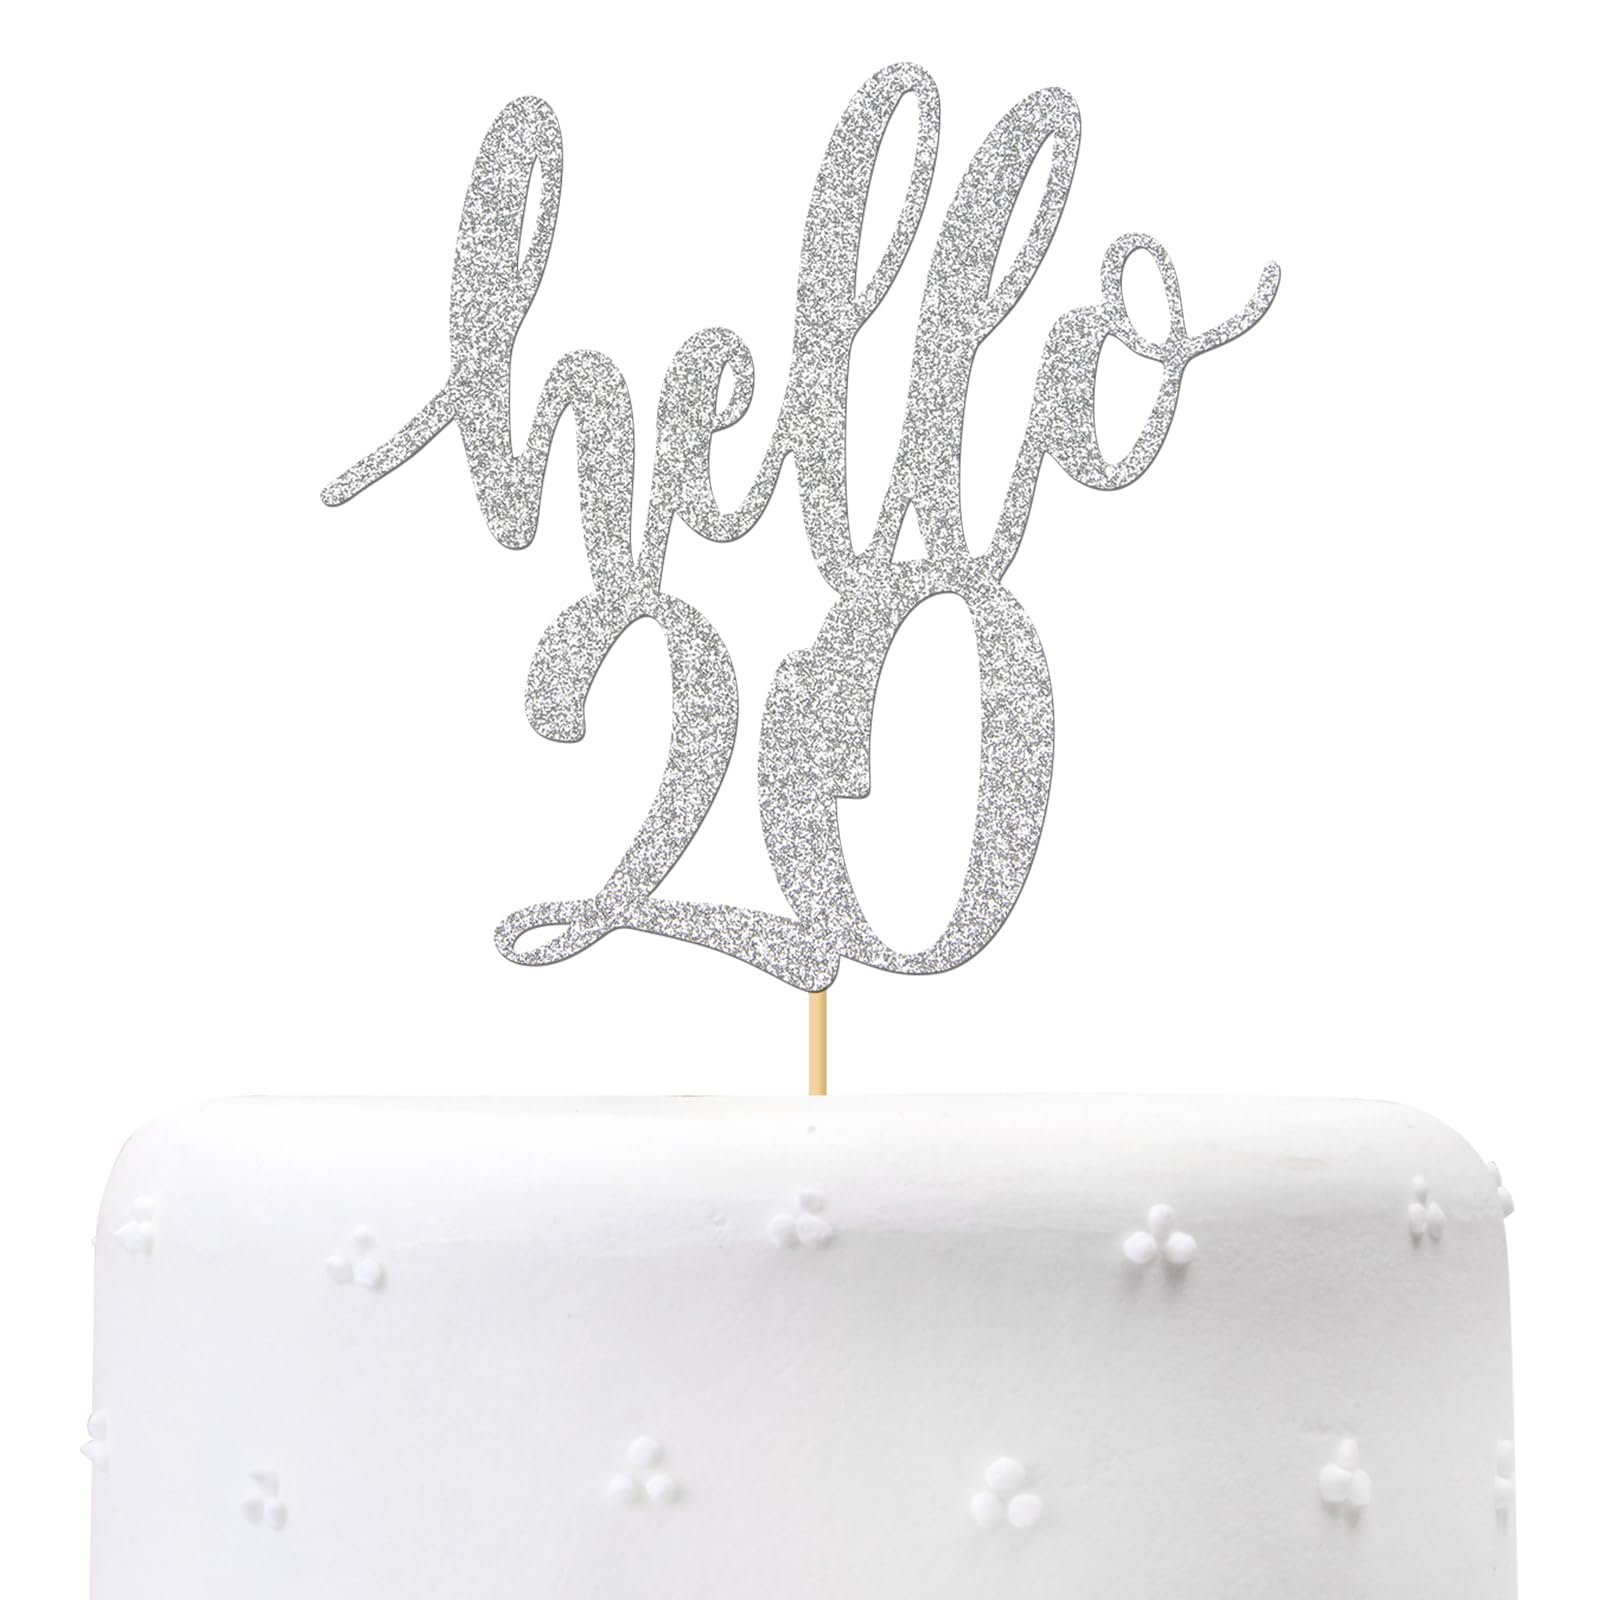 SRaa - 20 Years Of Love ♥️ 🌿Wedding Anniversary Cake 🌹 Chocolate cake  with mascarpone cream 🌹🌿 • • • • • • • #weddinganniversarycake  #20yearsoflove #cake #anniversarycakes #cakes #redrosecake #chocolate  #chocolatecake #